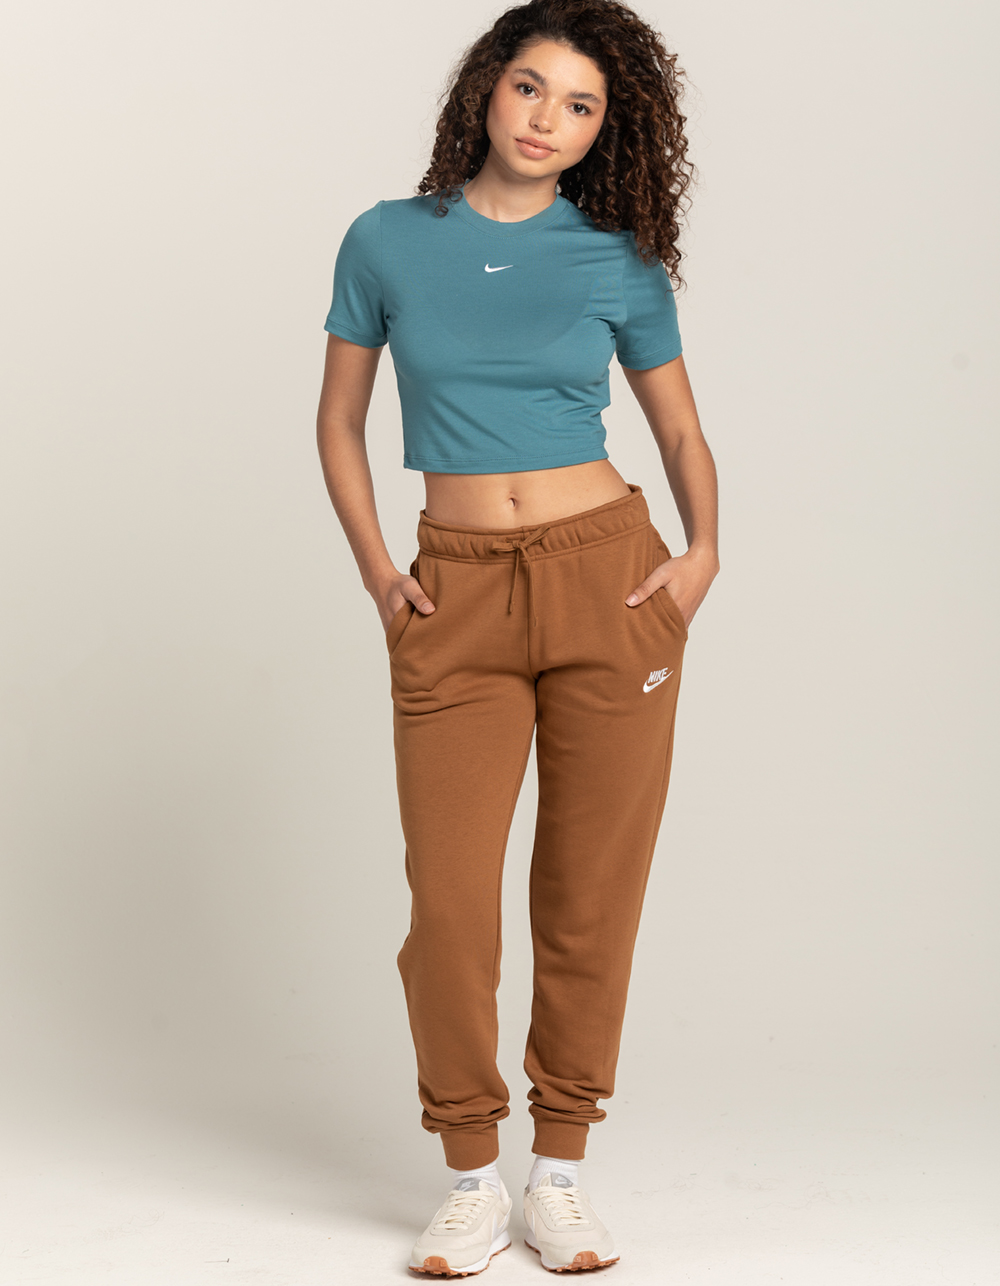 NIKE Sportswear Essential Slim Crop Womens Tee - TEAL BLUE